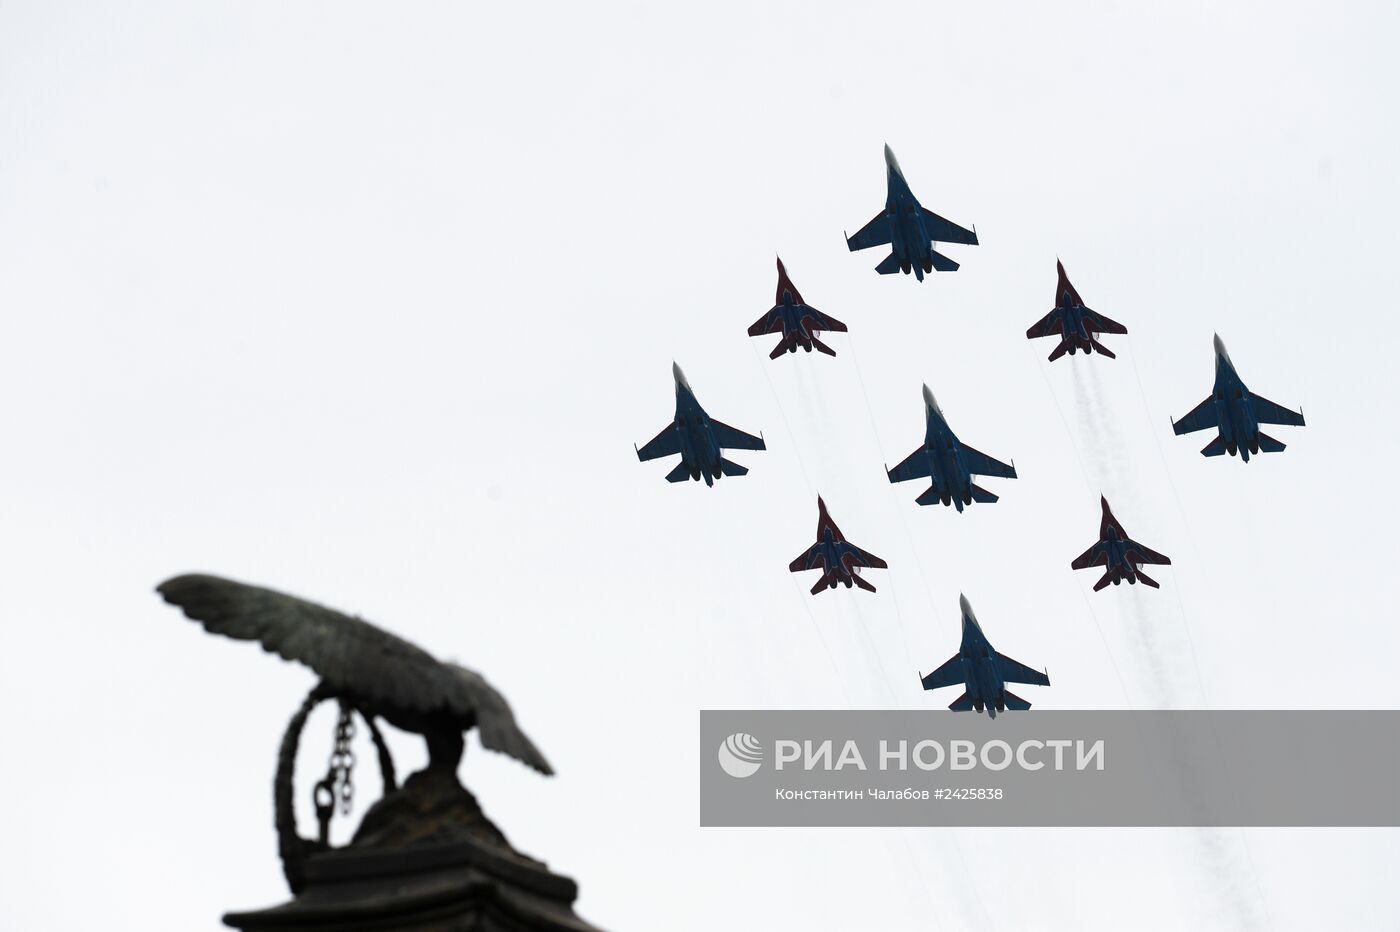 Воздушный парад в Севастополе в честь Дня Победы